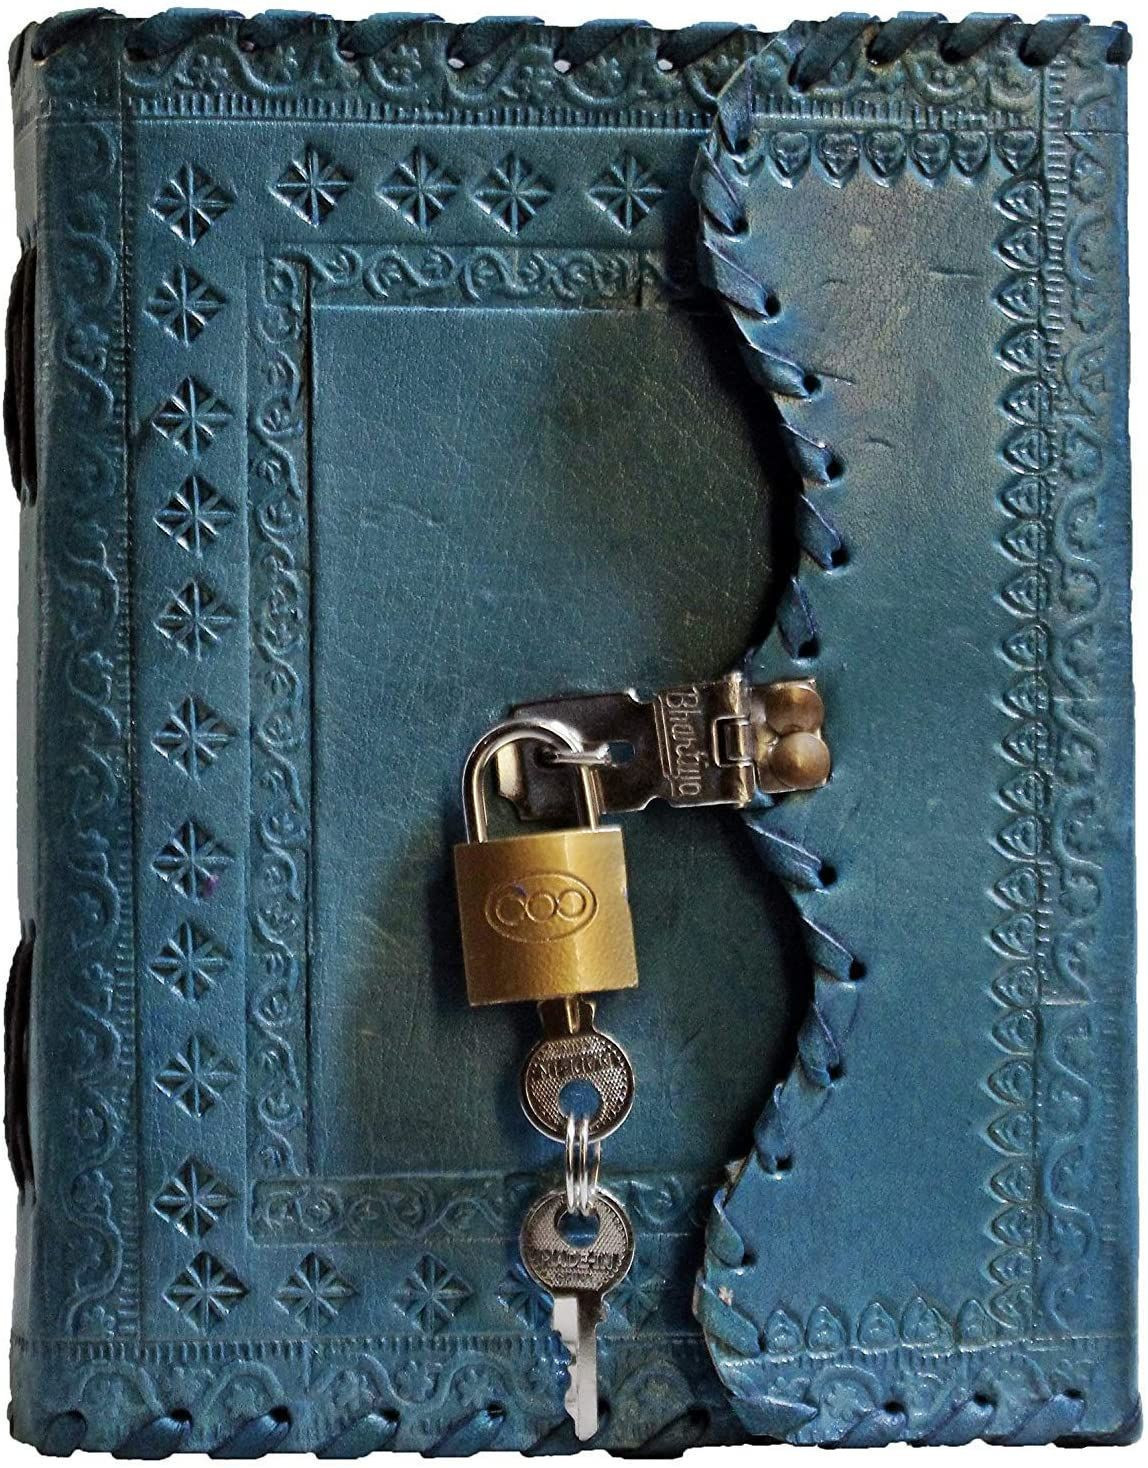 TUZECH皮革正品复古皮革杂志旅行日记写诗笔记本完美礼物